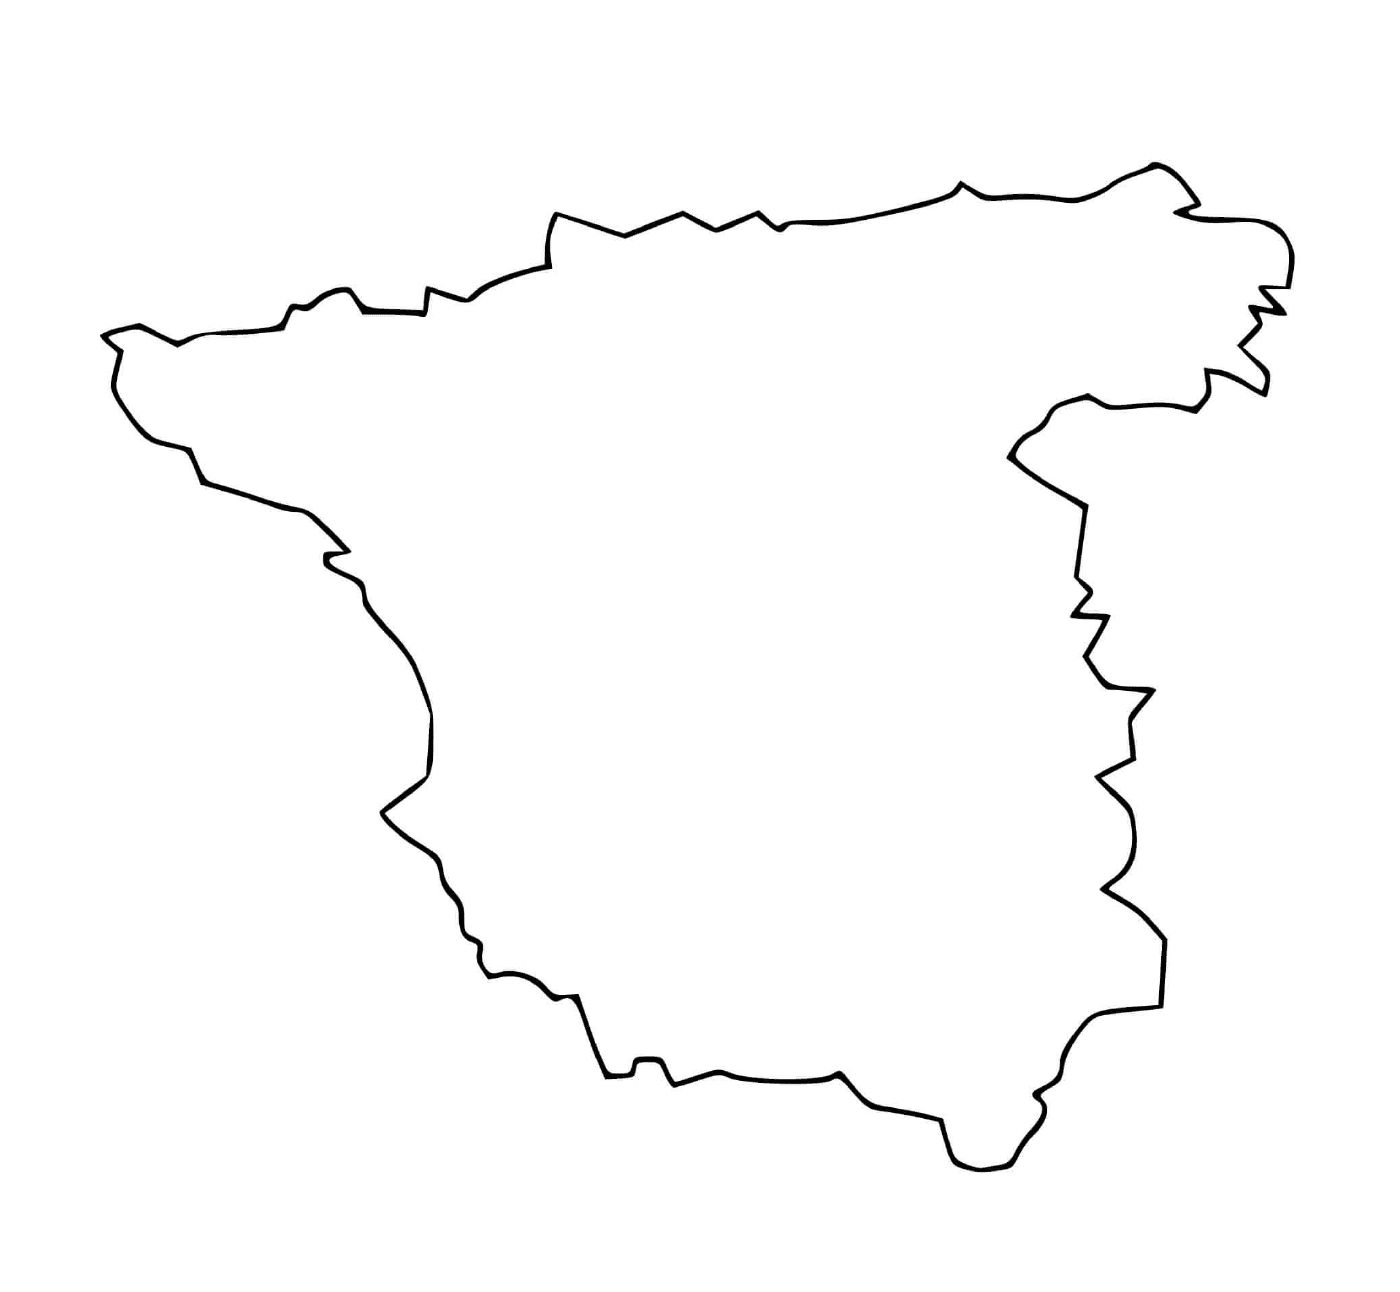   Carte du sud de l'Europe avec l'Espagne 